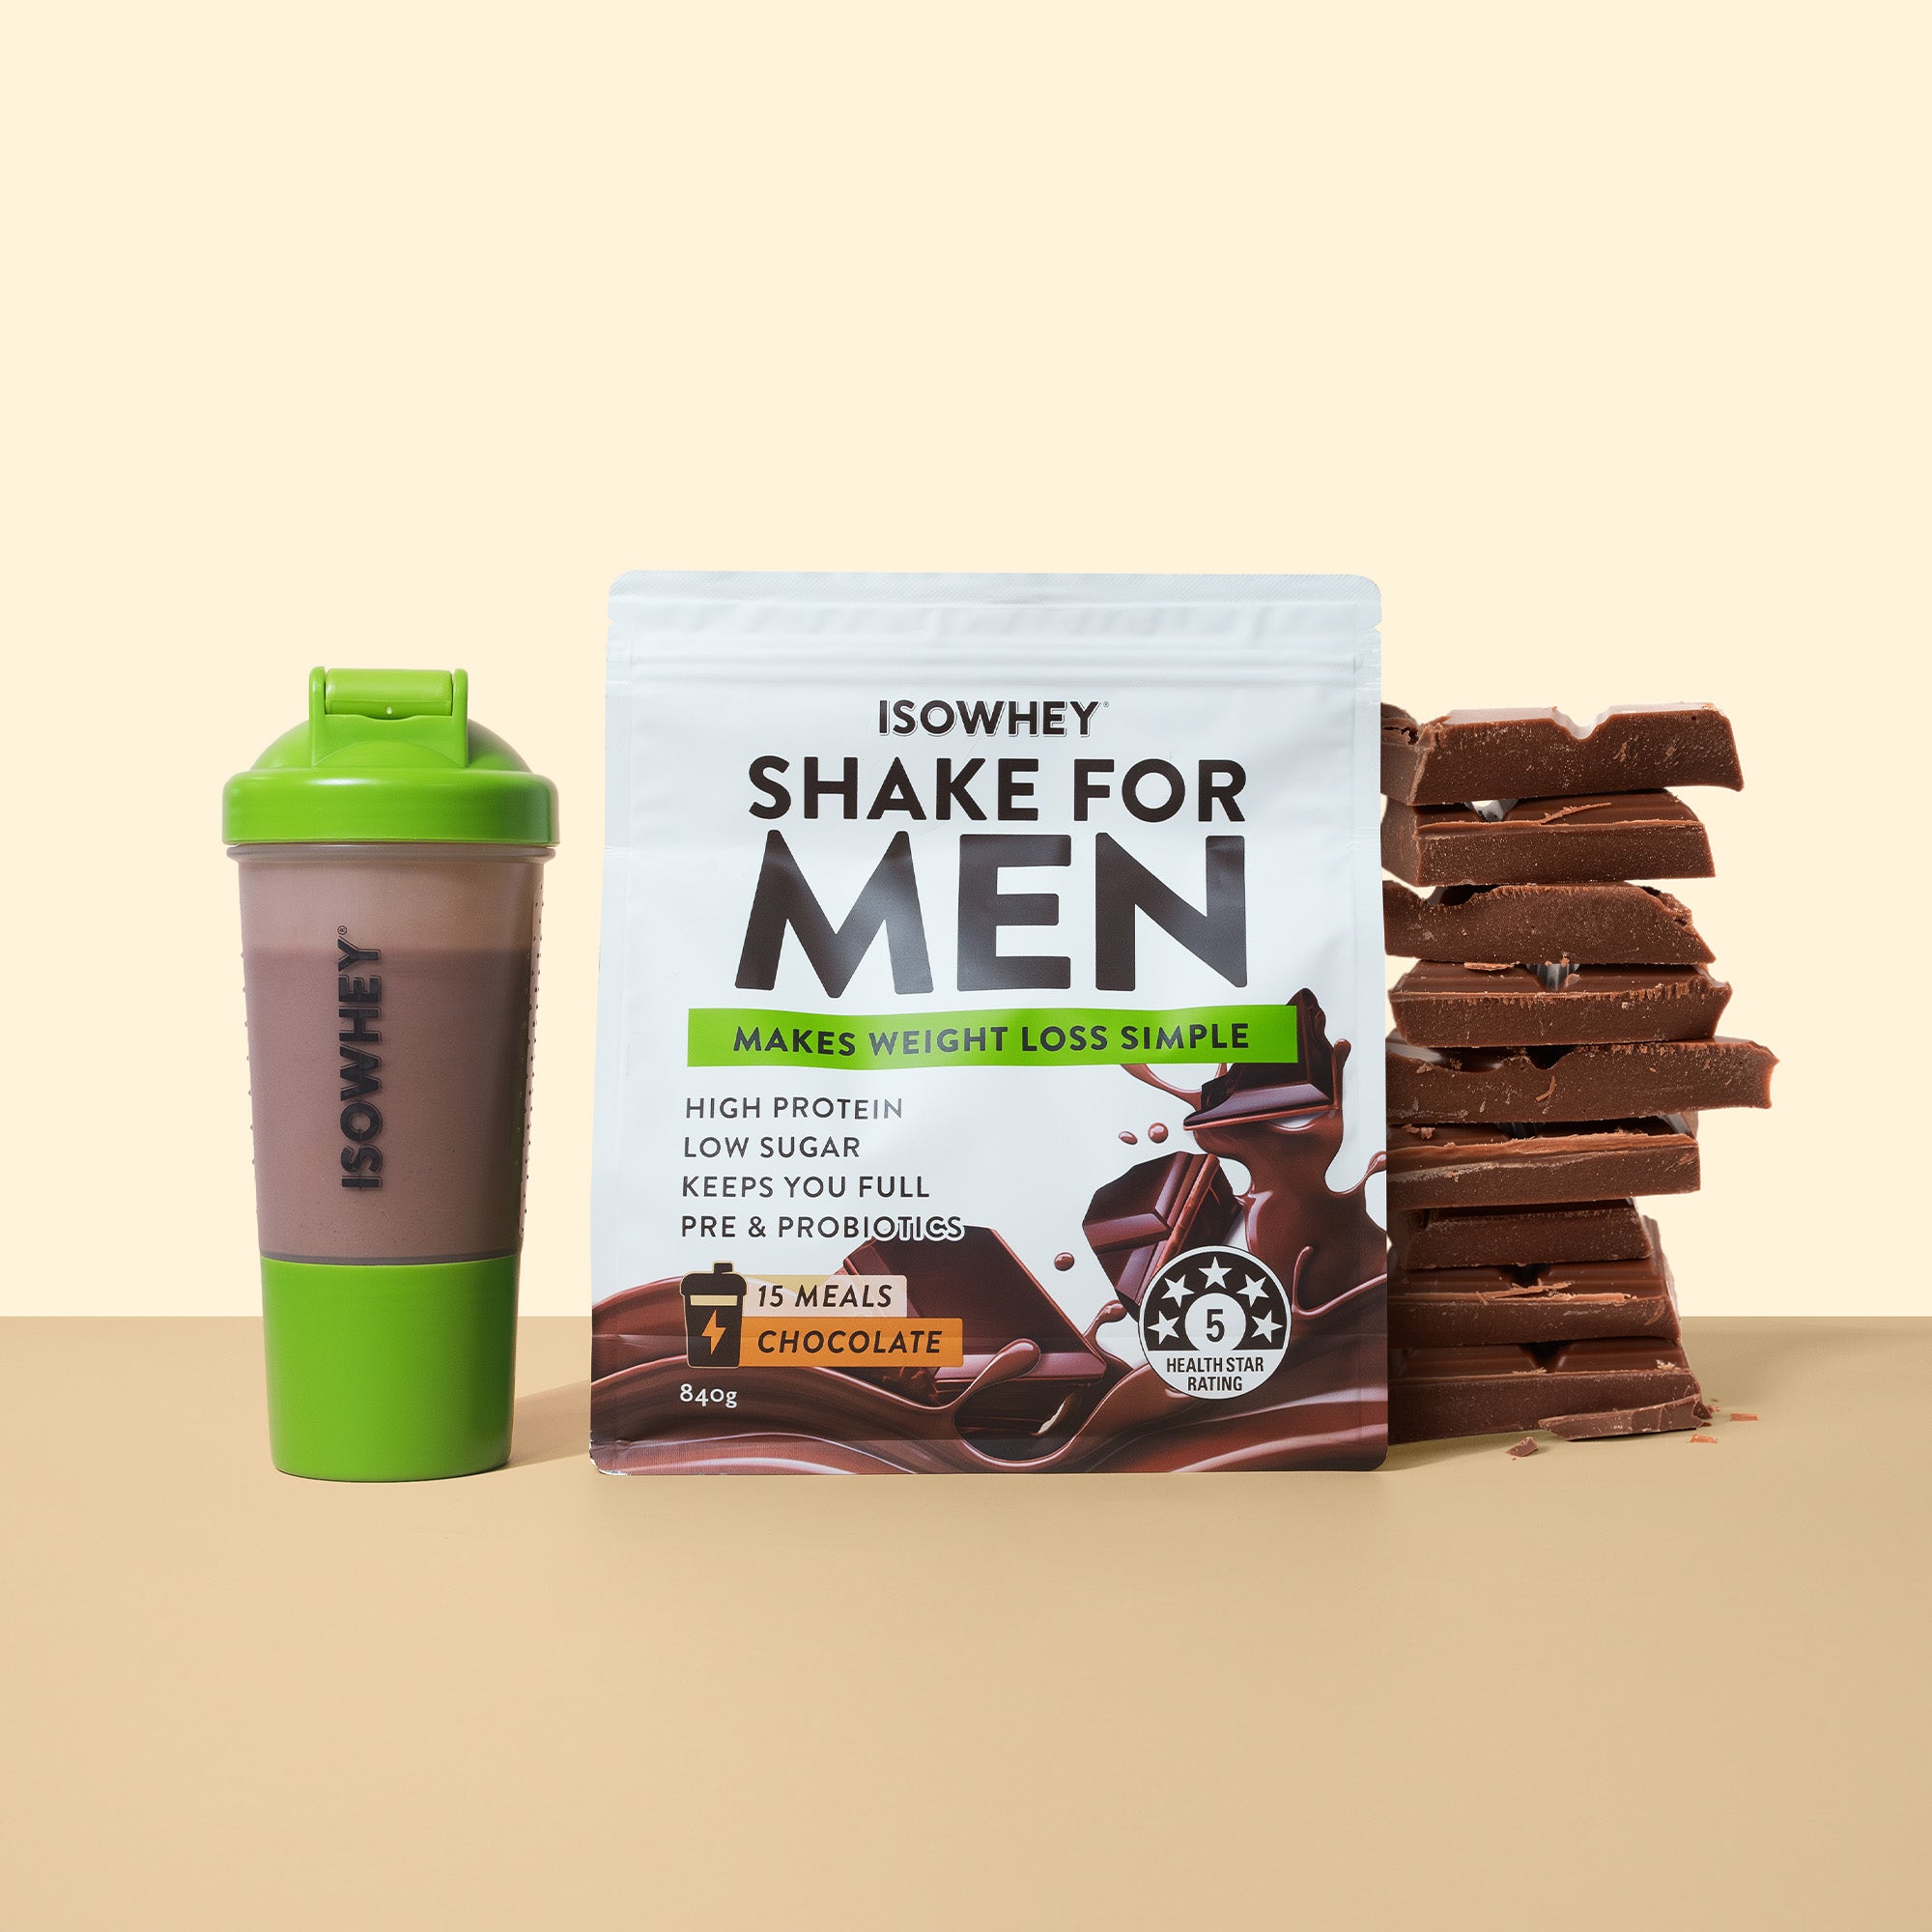 IsoWhey Shake for Men Chocolate 840g